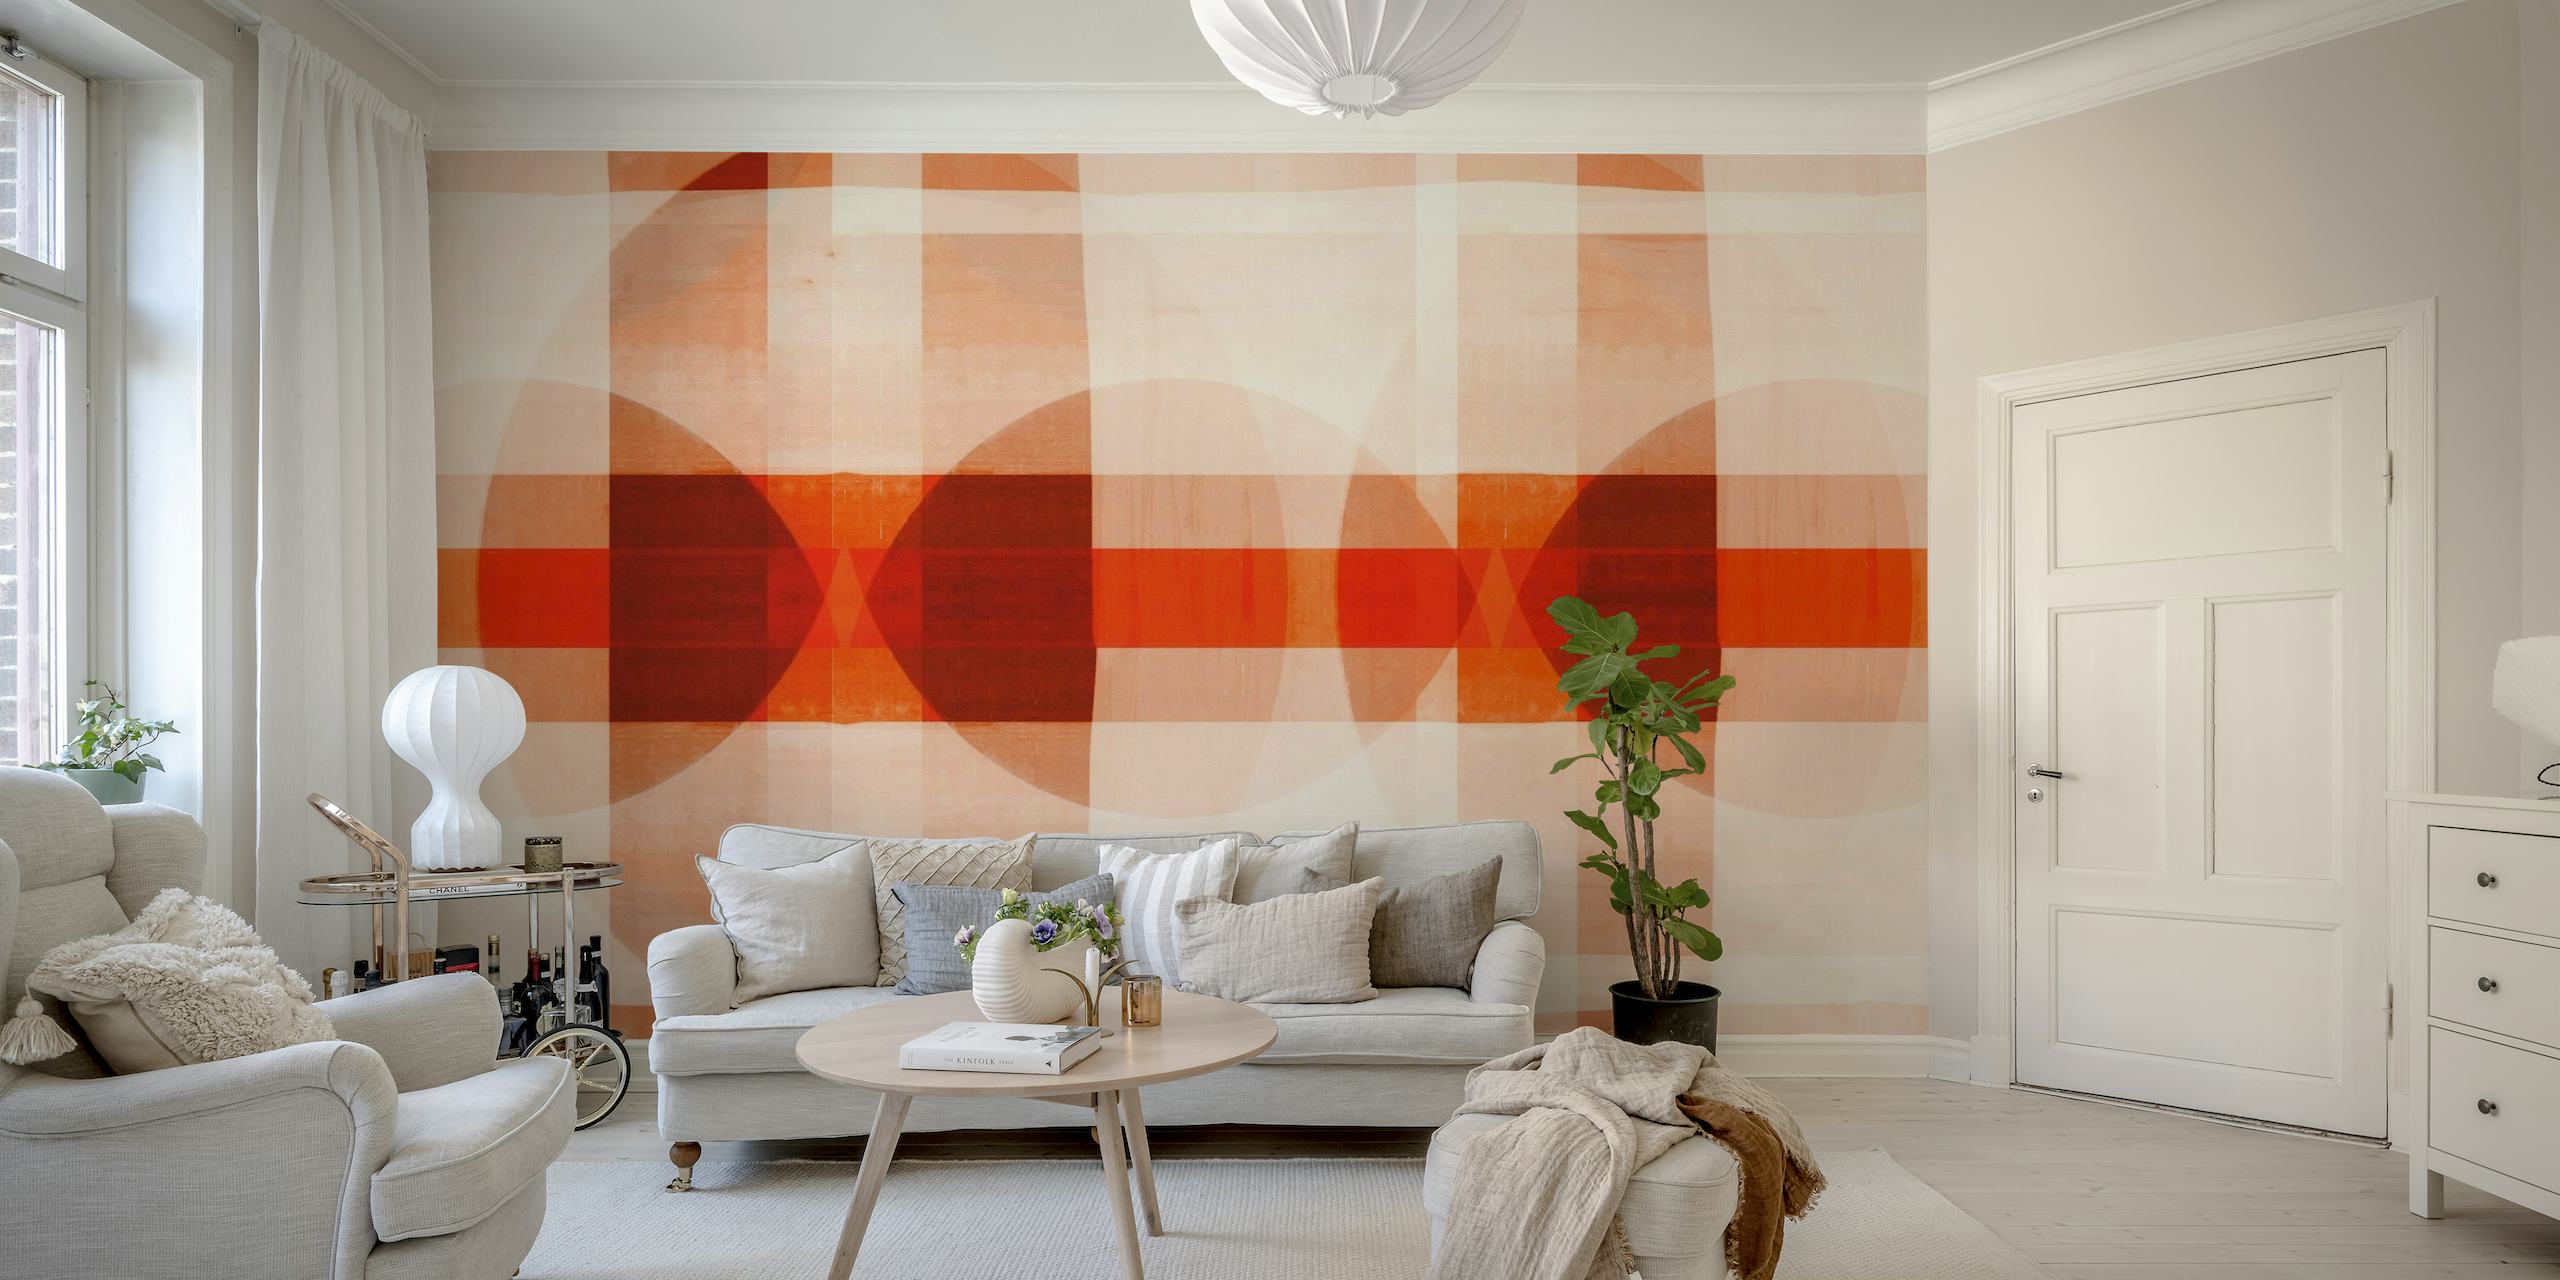 Bauhaus-inspirierte Mosaik-Tapete mit geometrischen Mustern in warmen Farben